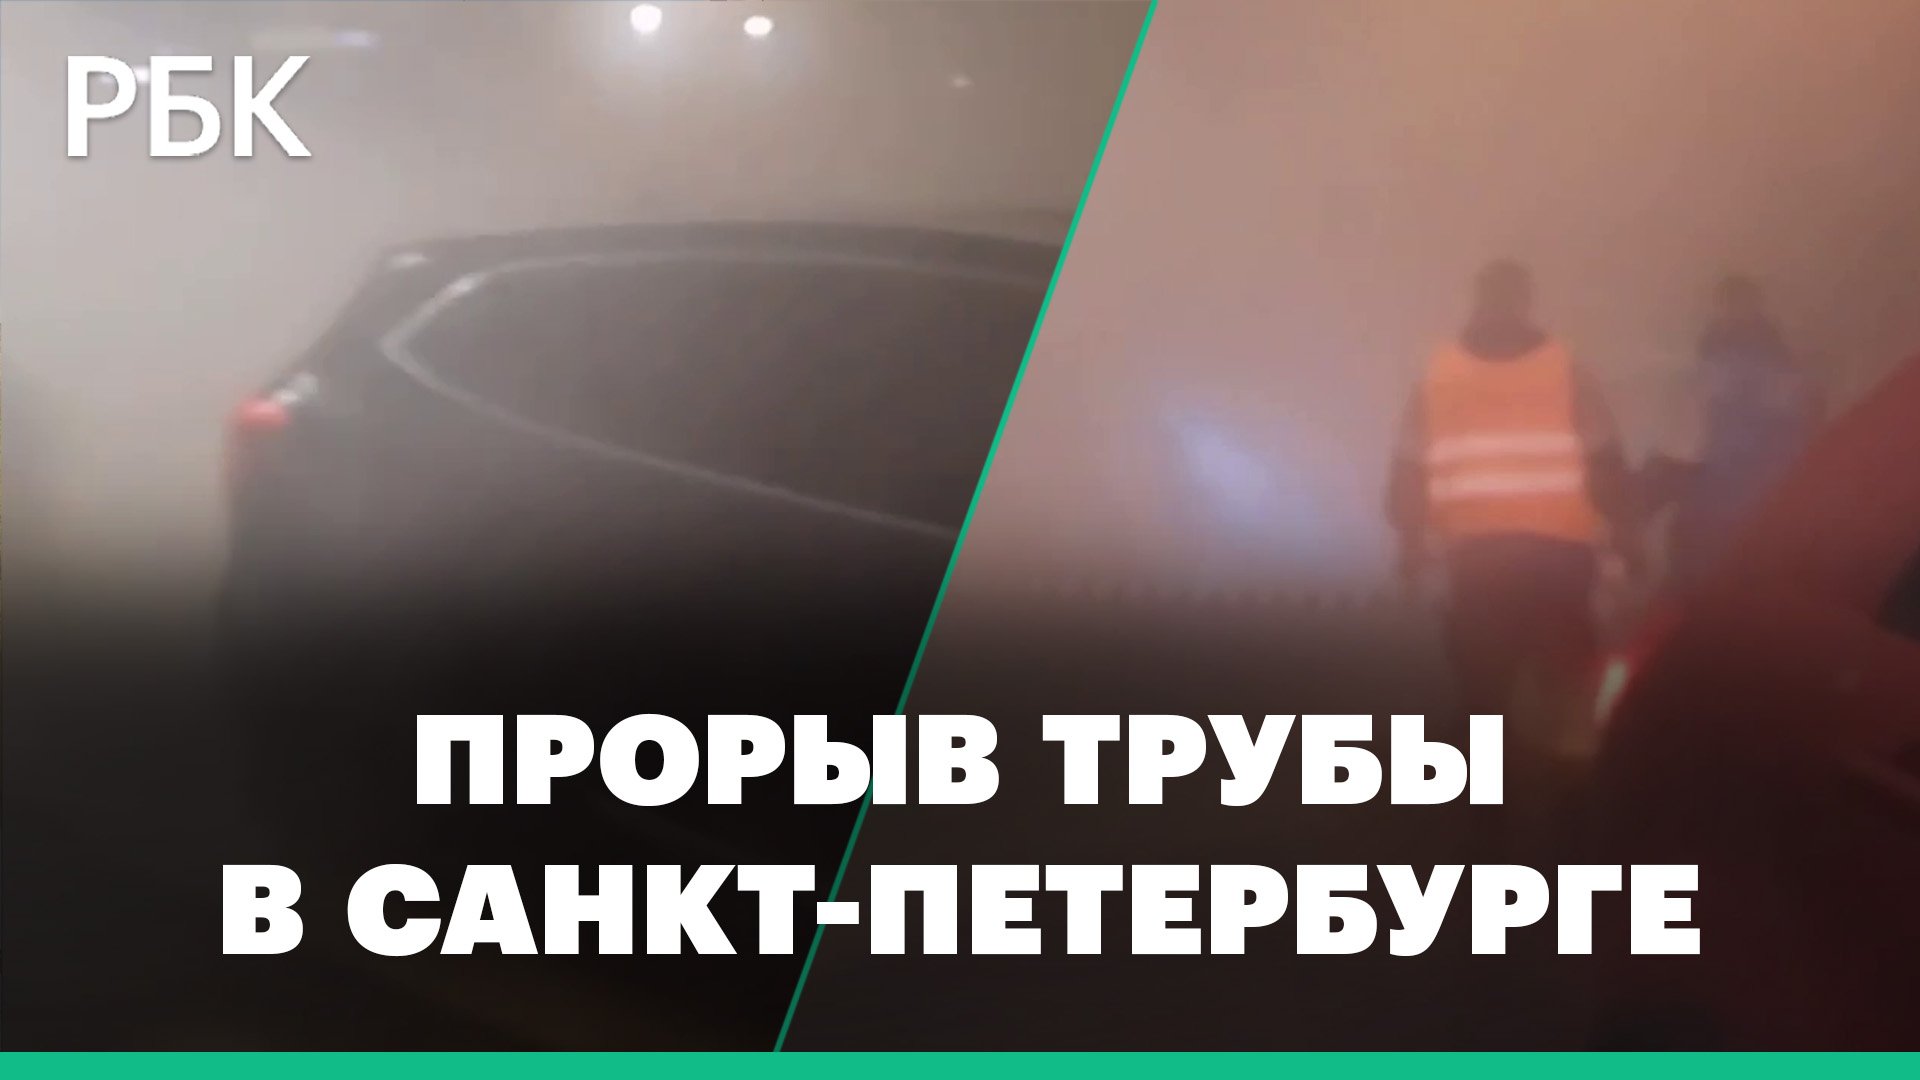 Десятки машин затопило кипятком из-за прорыва трубы в Санкт-Петербурге